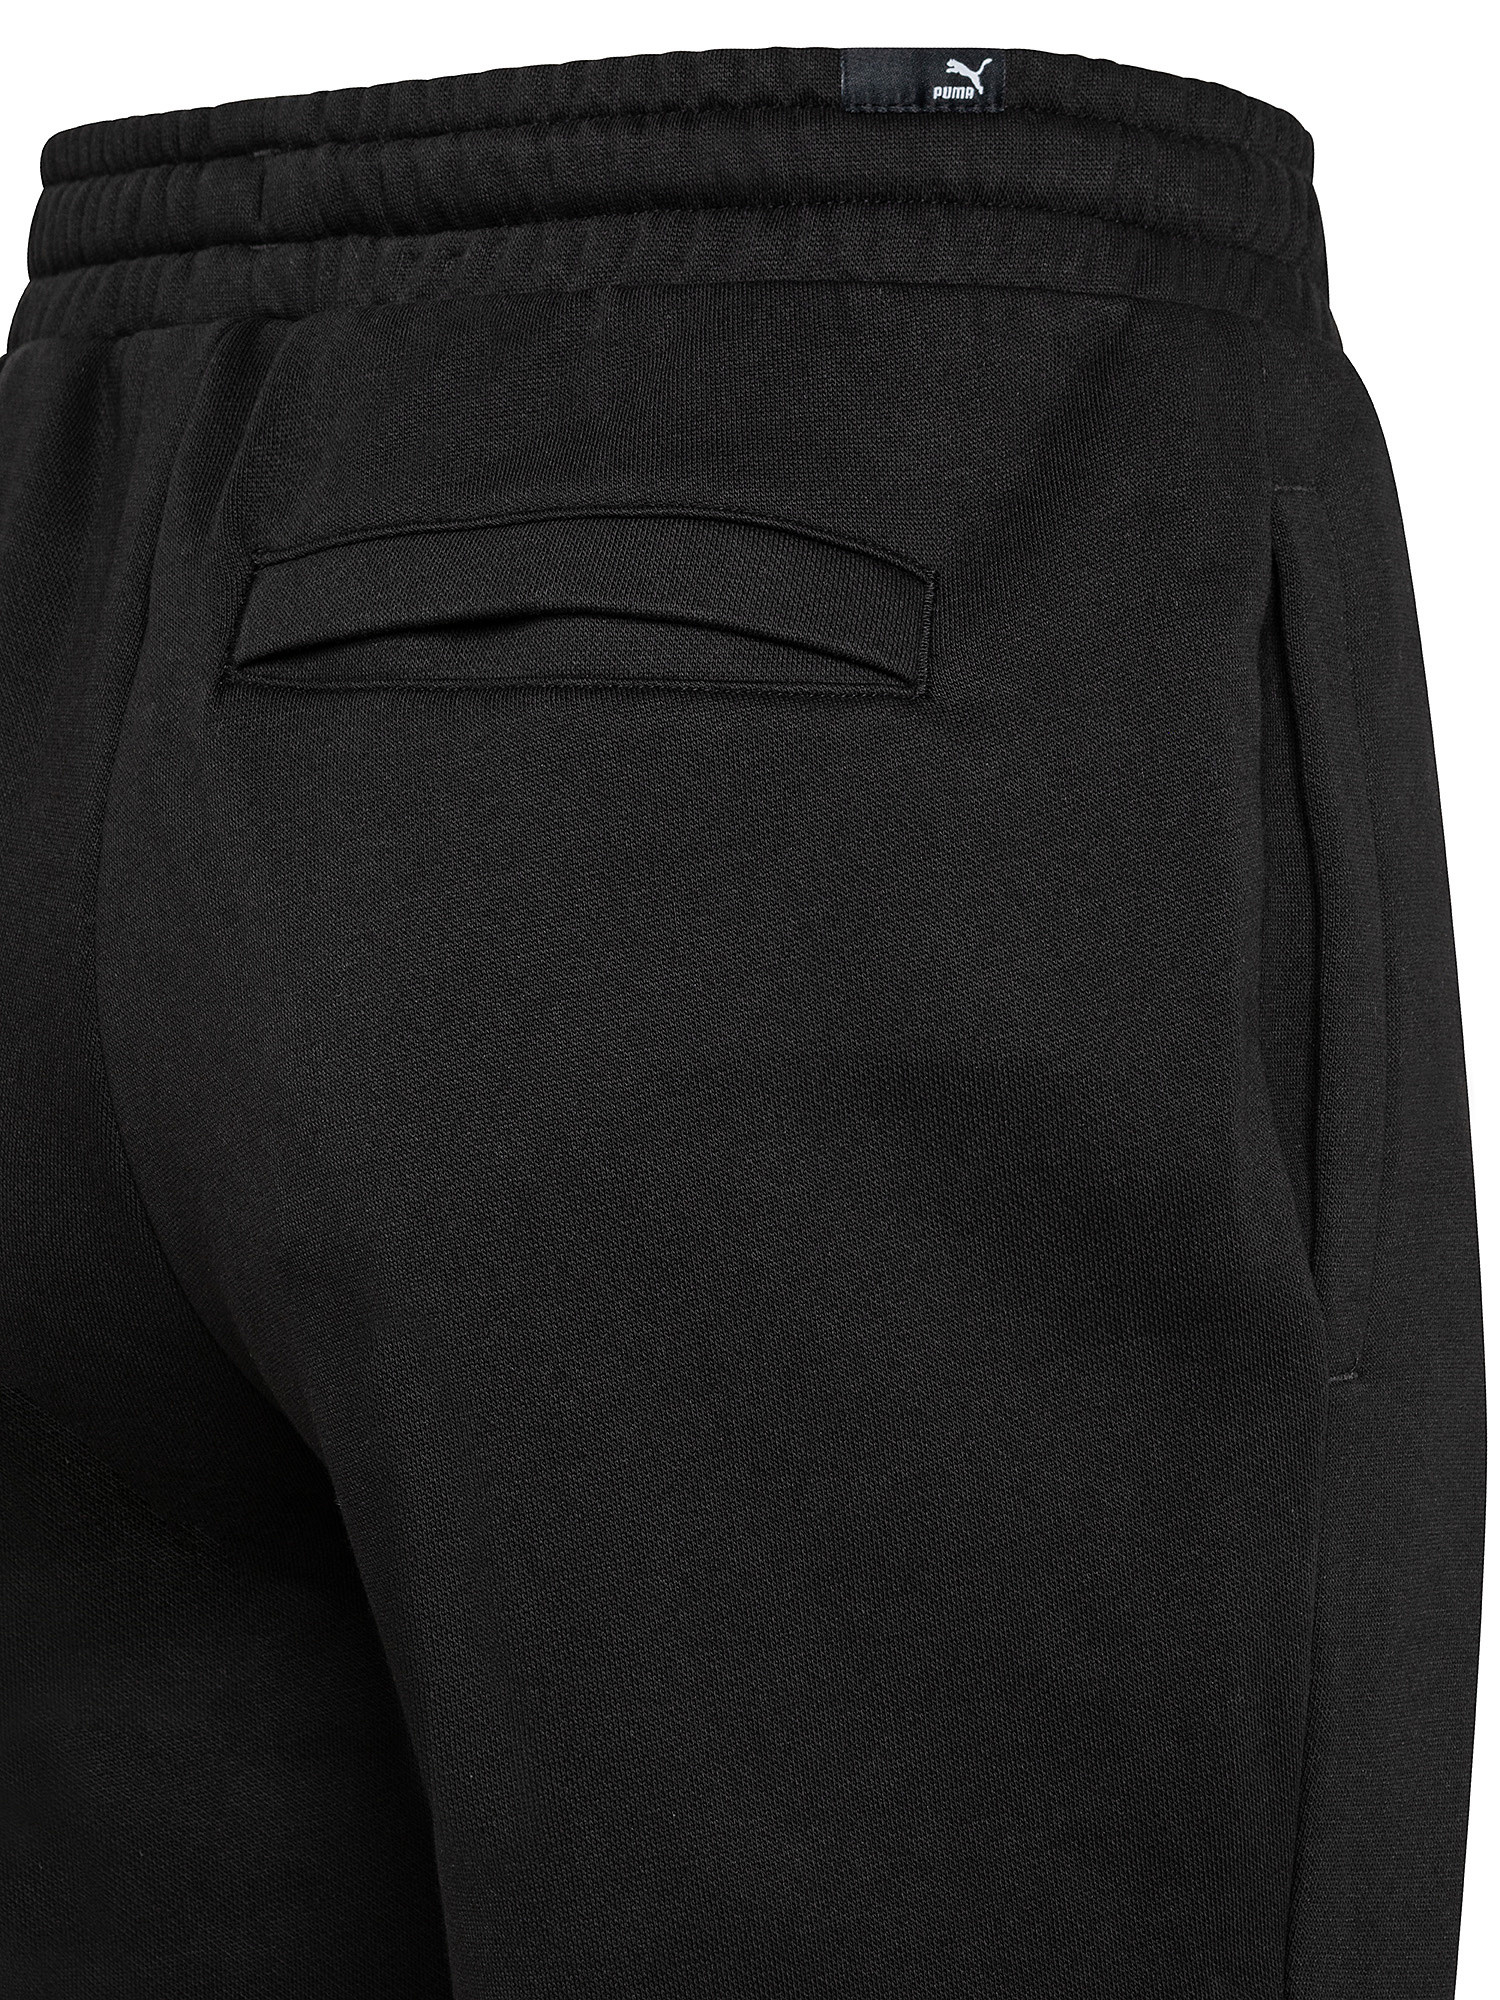 Pantaloni tuta con logo, Nero, large image number 2